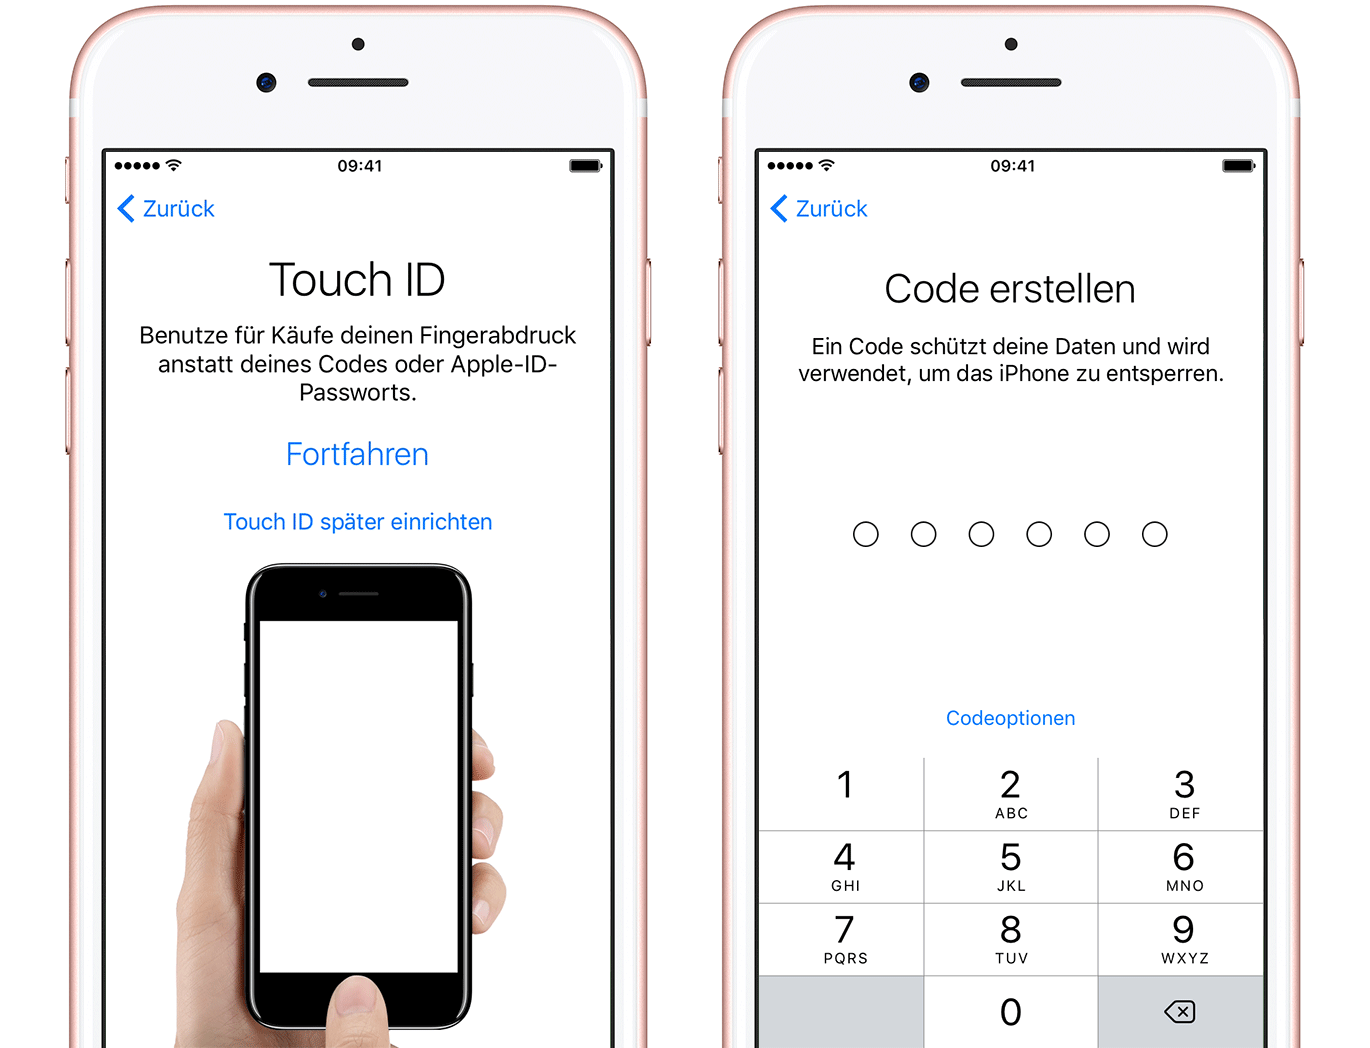 Touch ID einrichten & Code erstellen – aus Apple.de